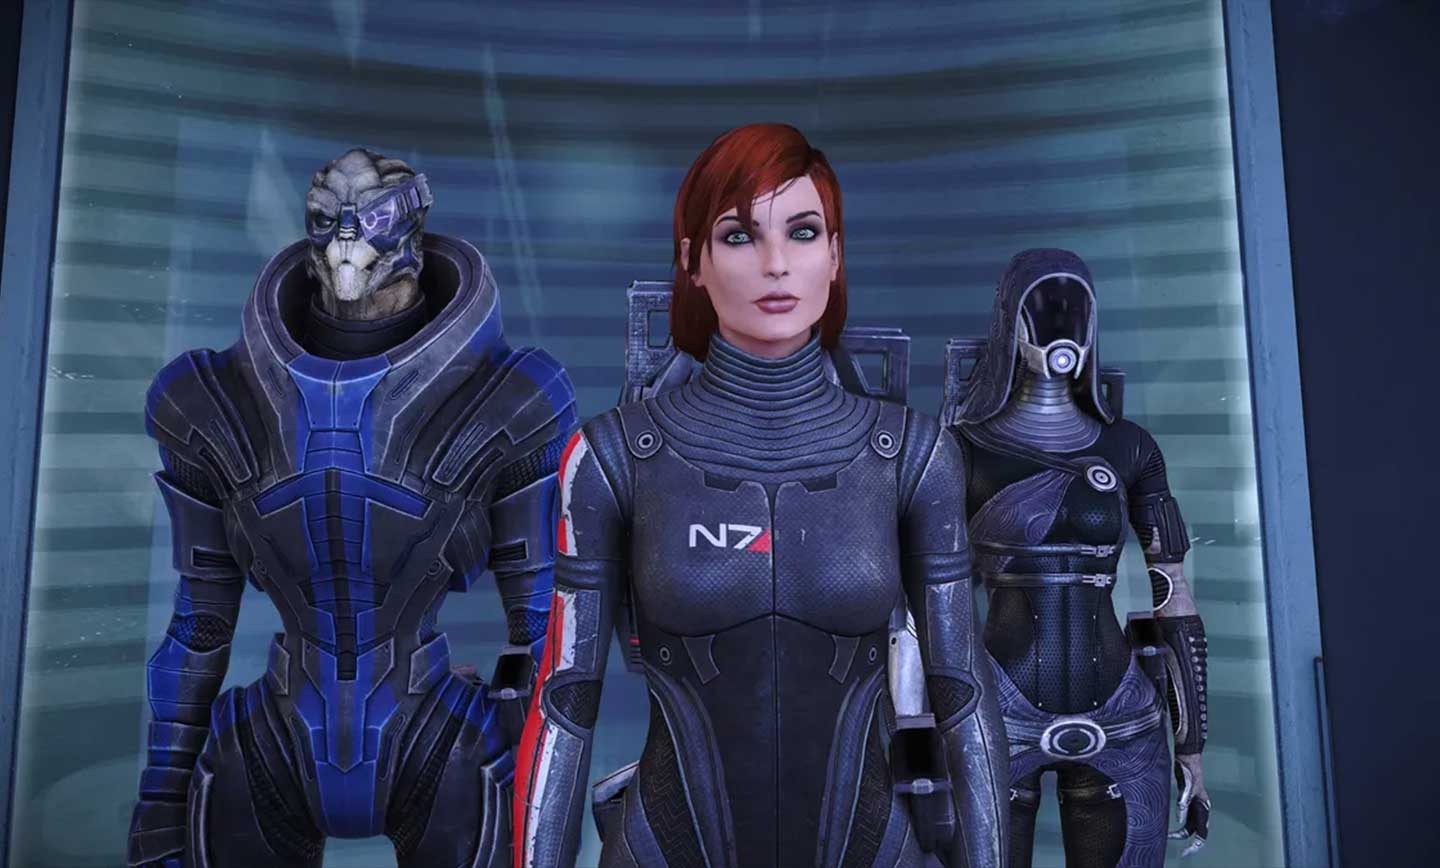 بازی Mass Effect Legendary Edition